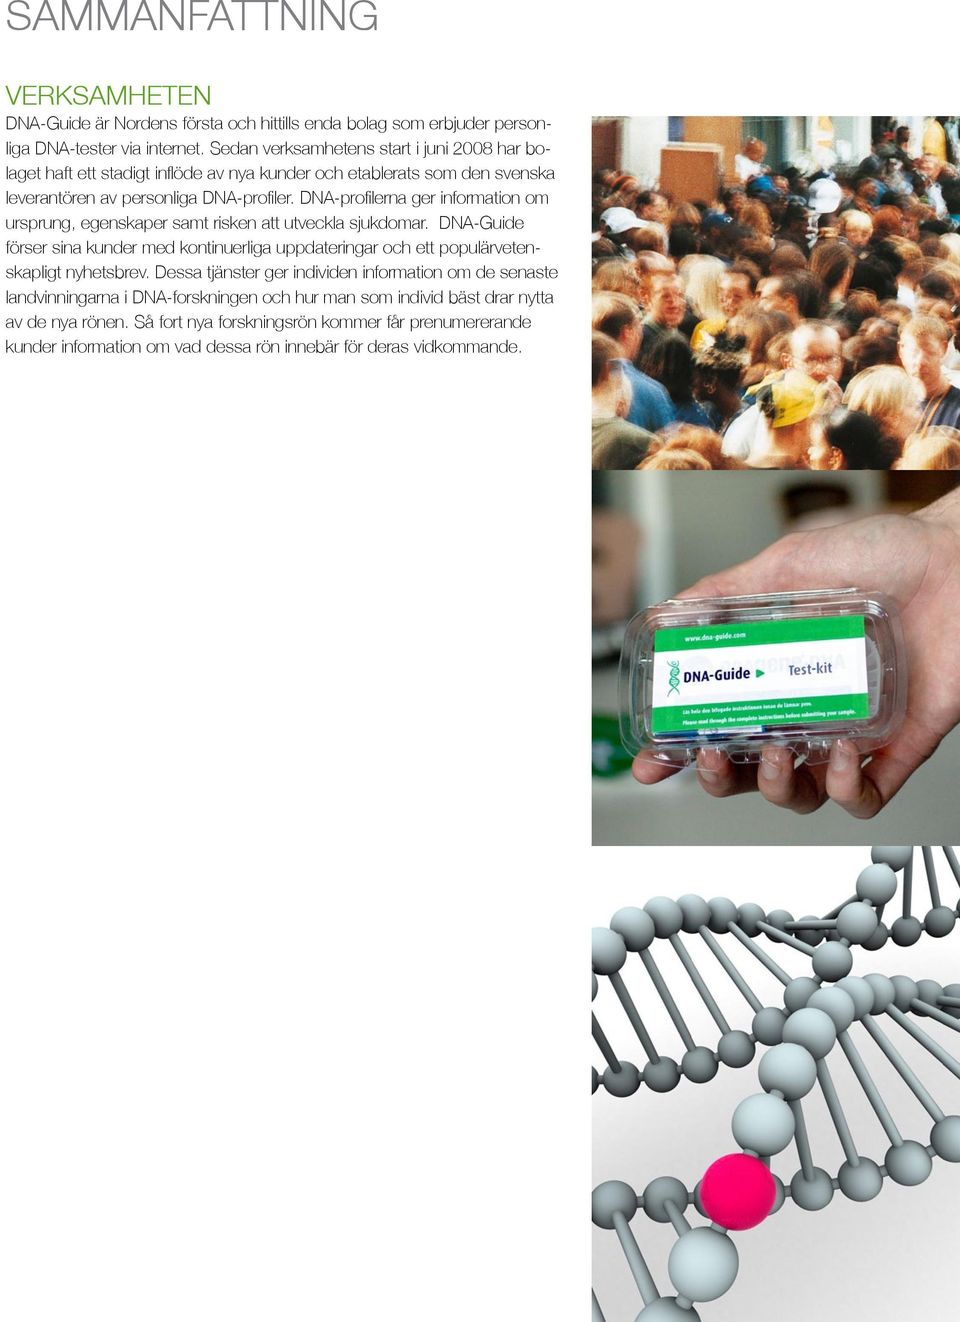 DNA-profilerna ger information om ursprung, egenskaper samt risken att utveckla sjukdomar. DNA- Guide förser sina kunder med kontinuerliga uppdateringar och ett populärvetenskapligt nyhetsbrev.